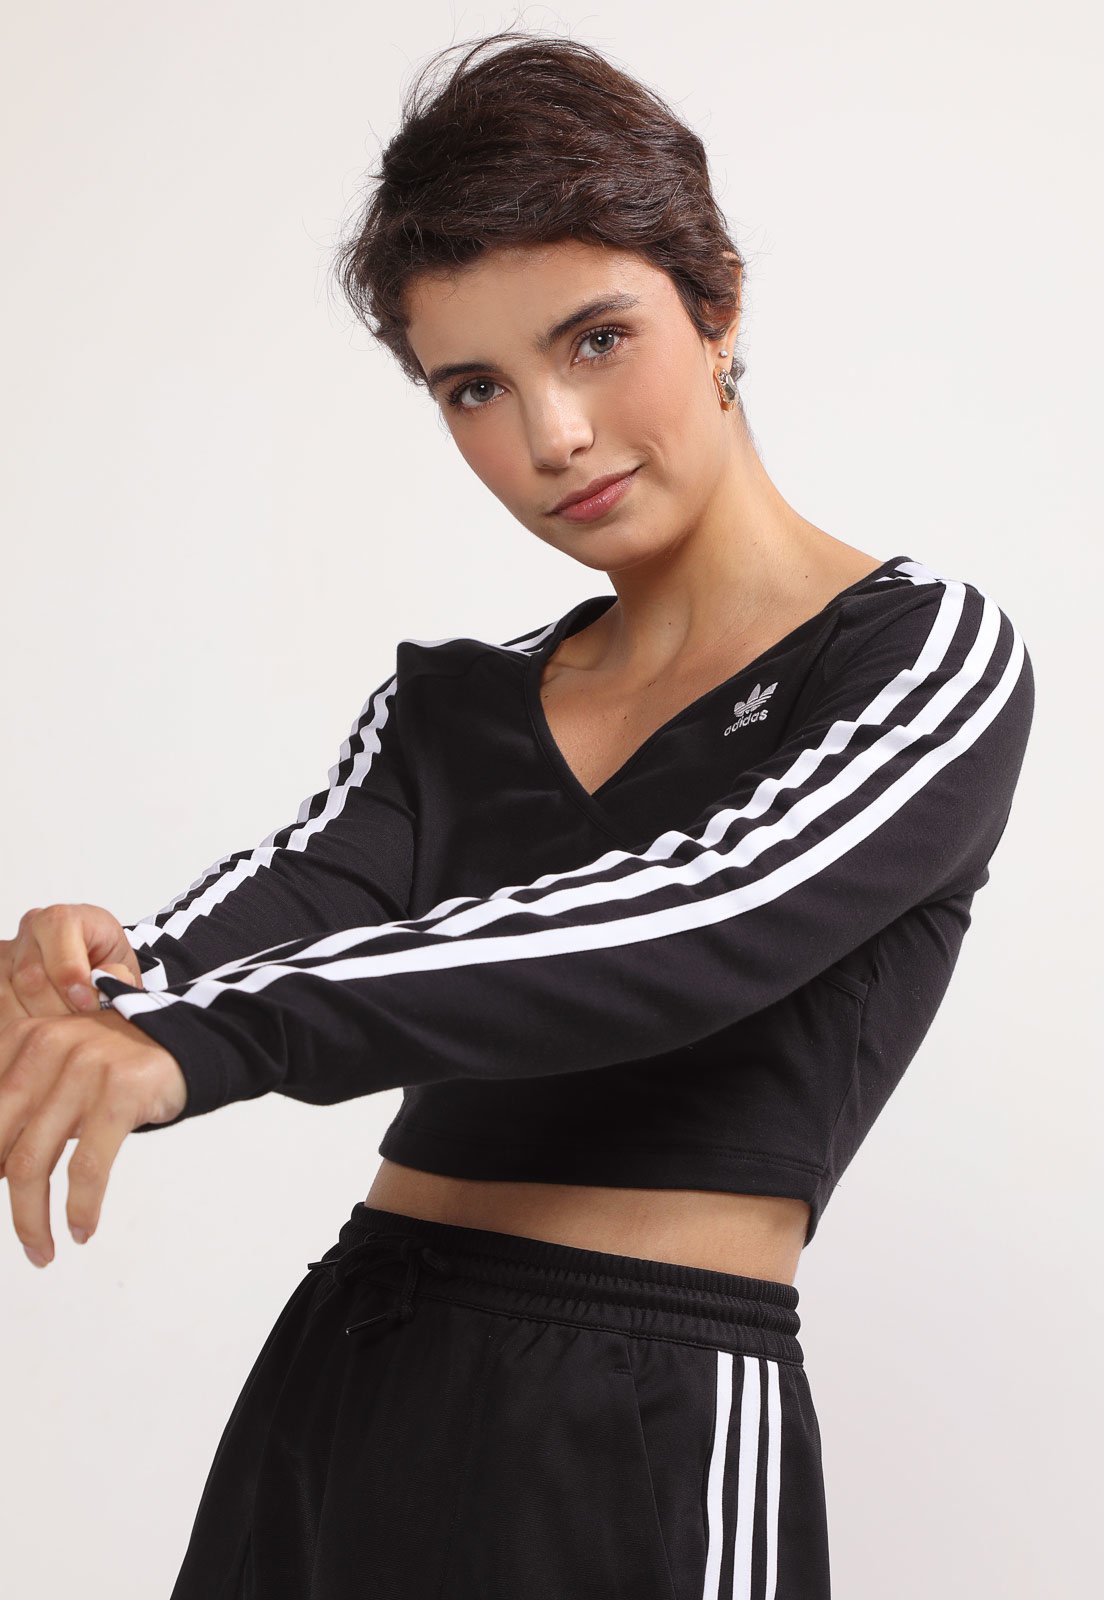 Camiseta Cropped adidas Yoga Studio - Feminina em Promoção